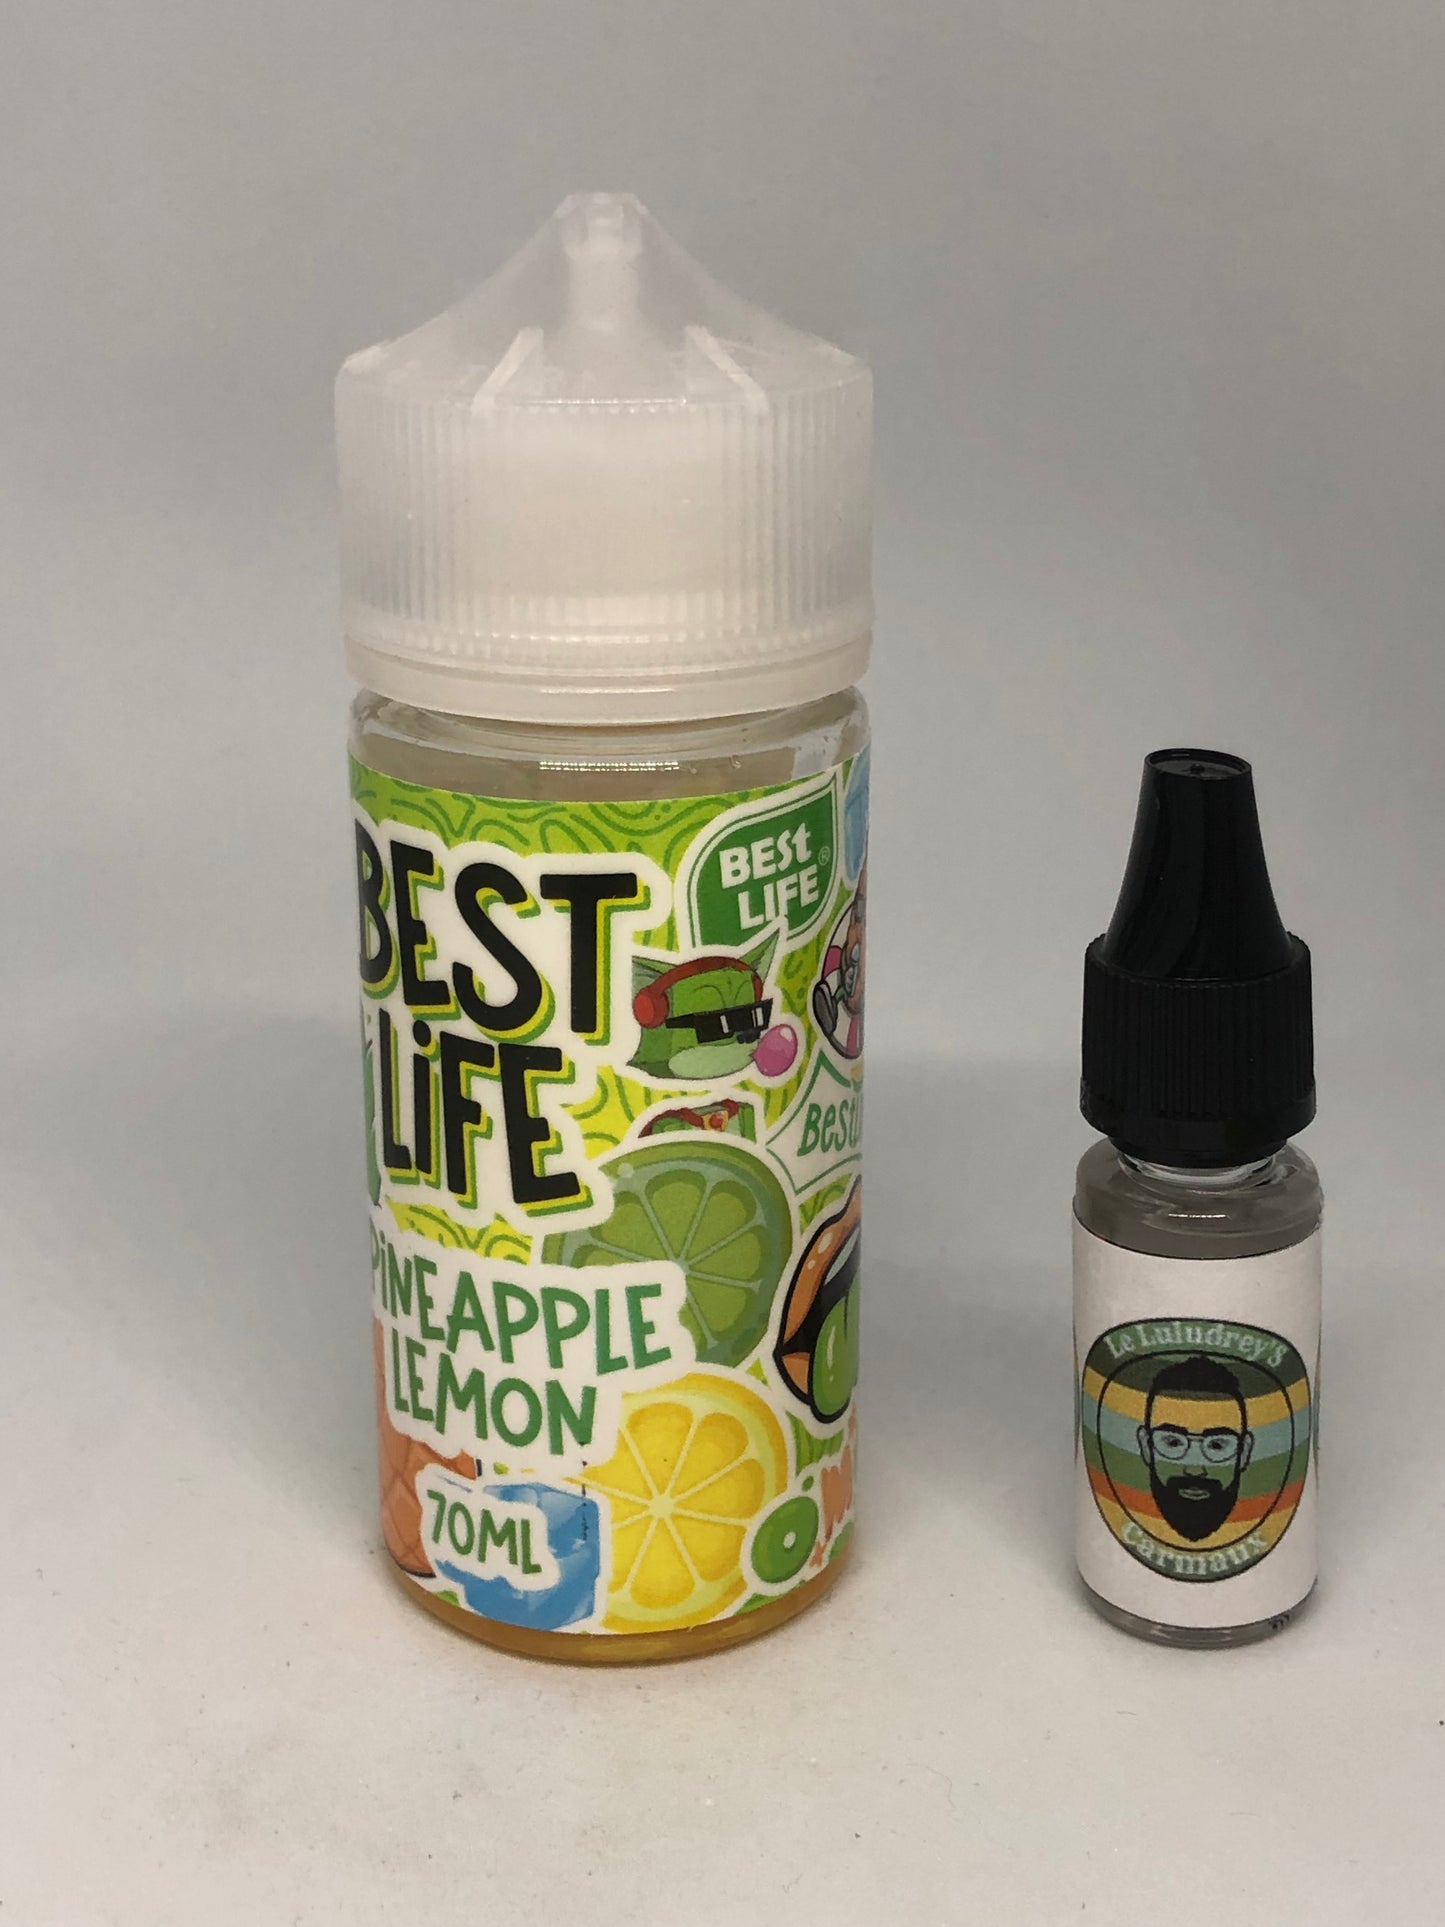 E-liquide - Best Life - pine apple lemon - 70ml